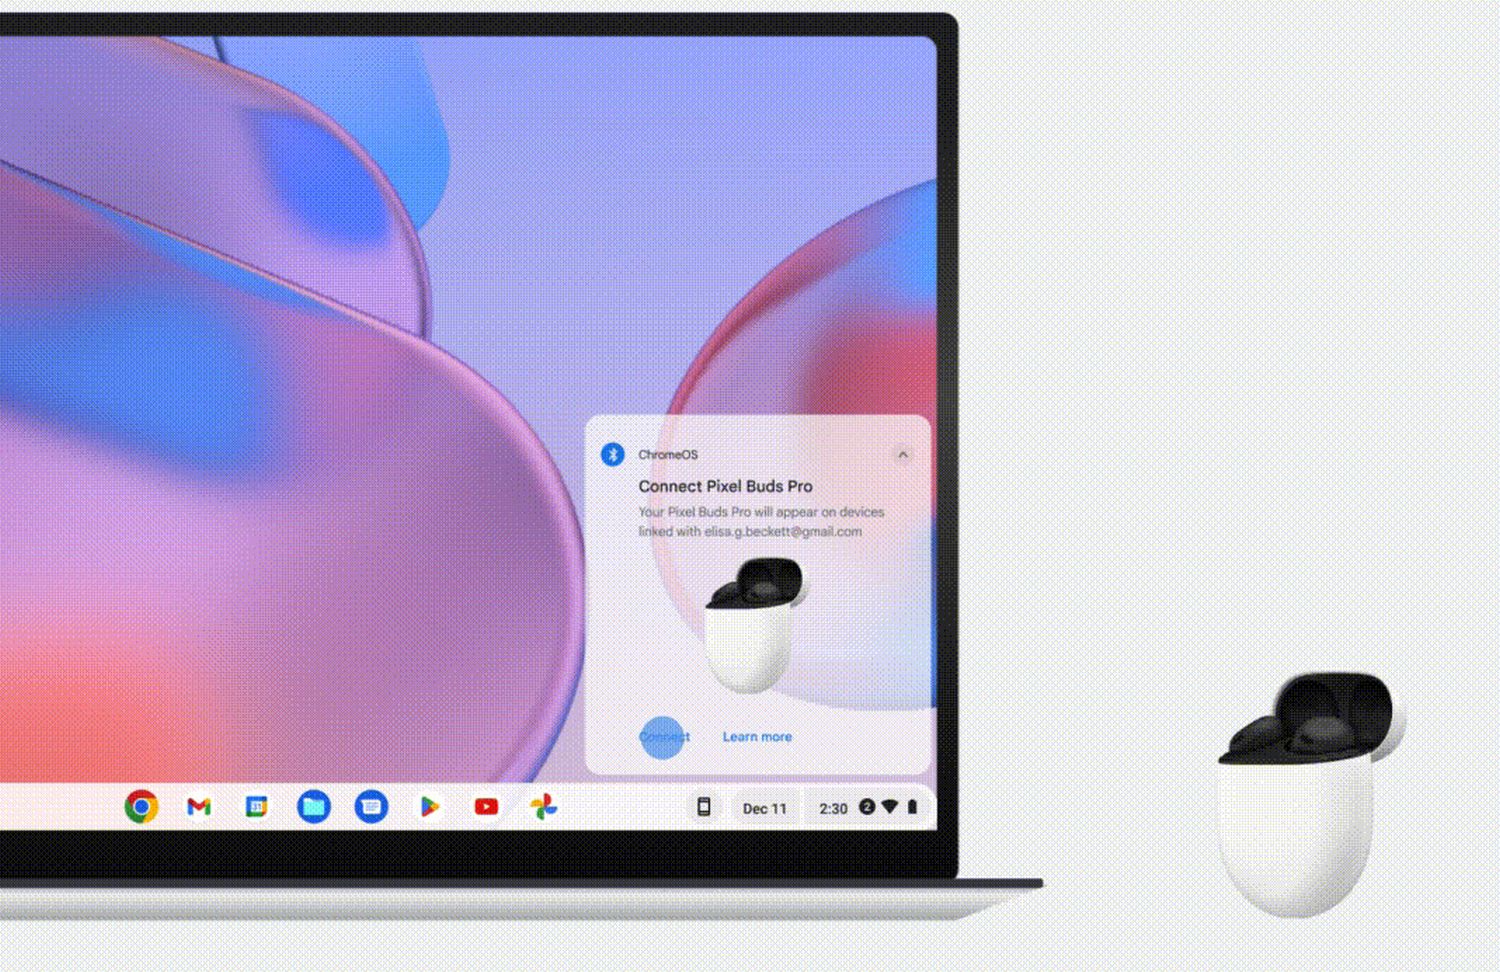 Fast Pair kommt auf Chromebooks: Google Chrome OS ermöglicht schnelle und einfache Verbindung von Bluetooth-Kopfhörern